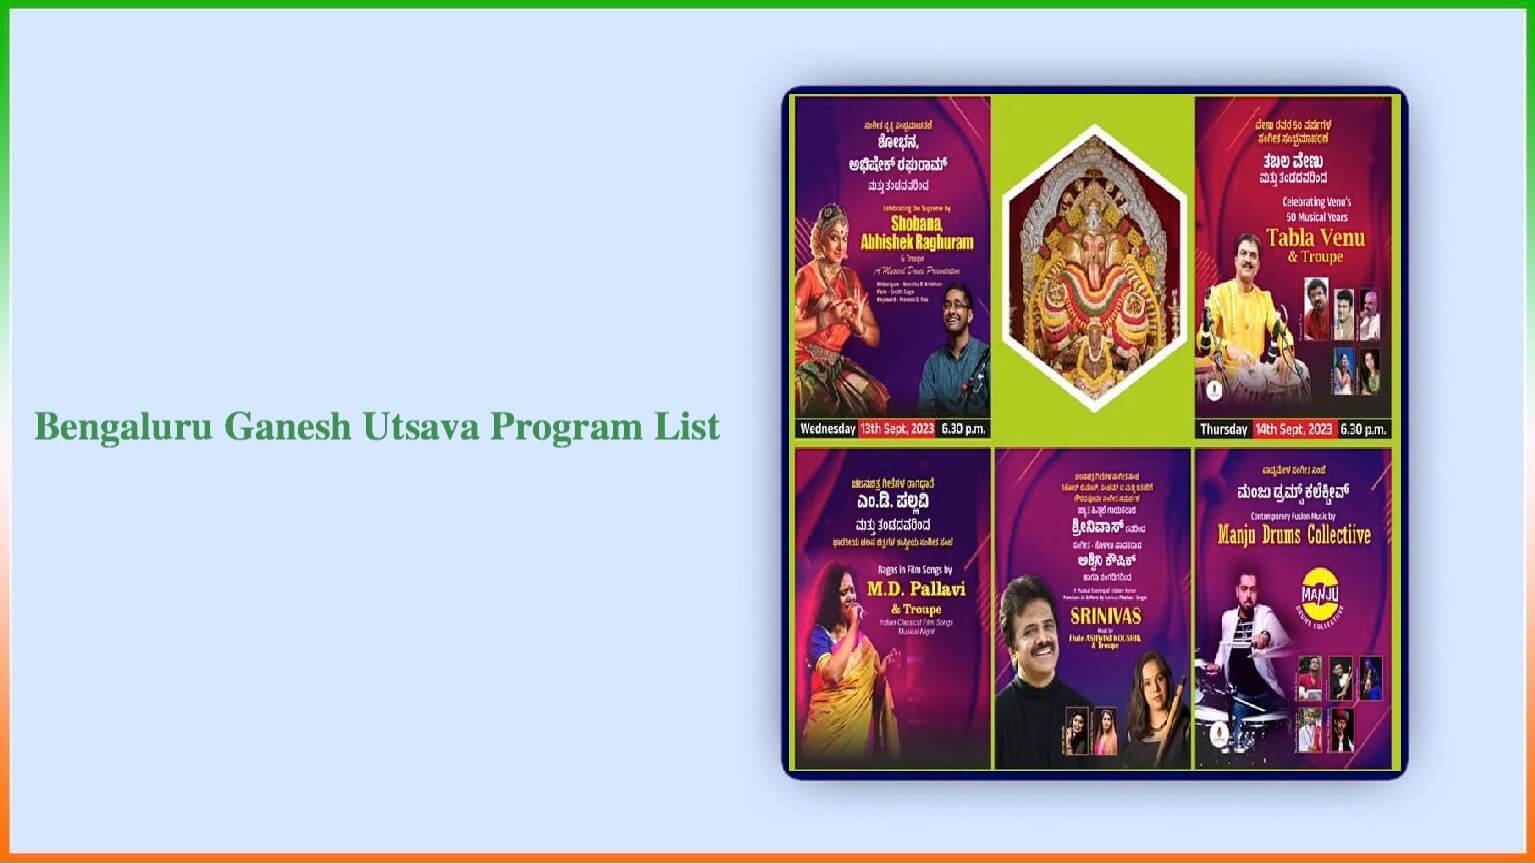 Bengaluru Ganesh Utsava Program List